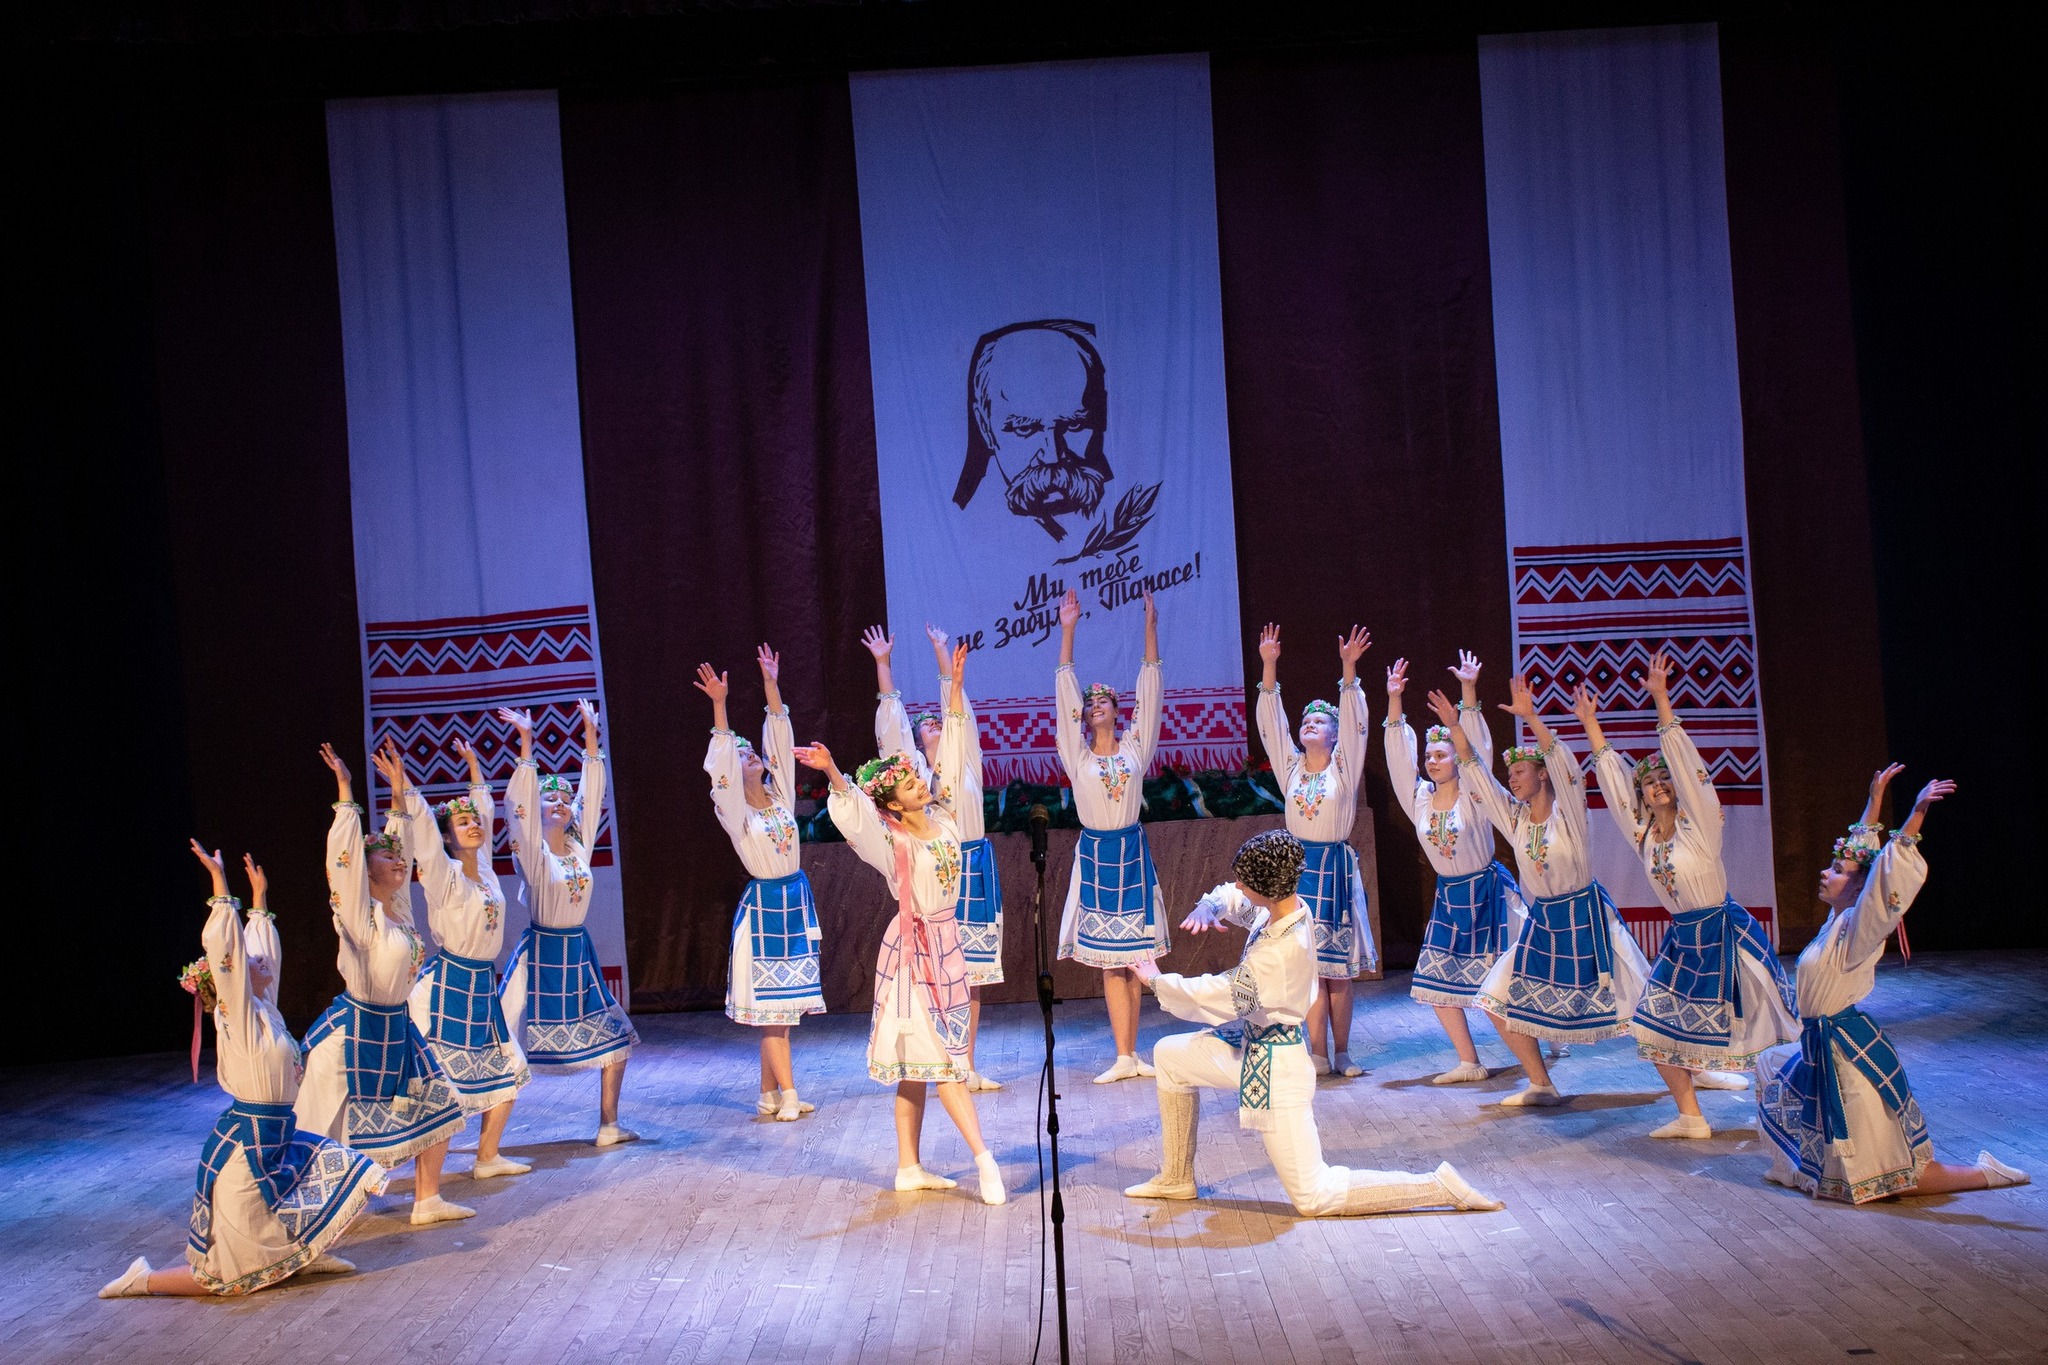 zdjęcie przedstawia zespół taneczny składający się z jednego mężczyzny oraz kilkunastu kobiet ubranych w stroje regionalne w trakcie występu na scenie